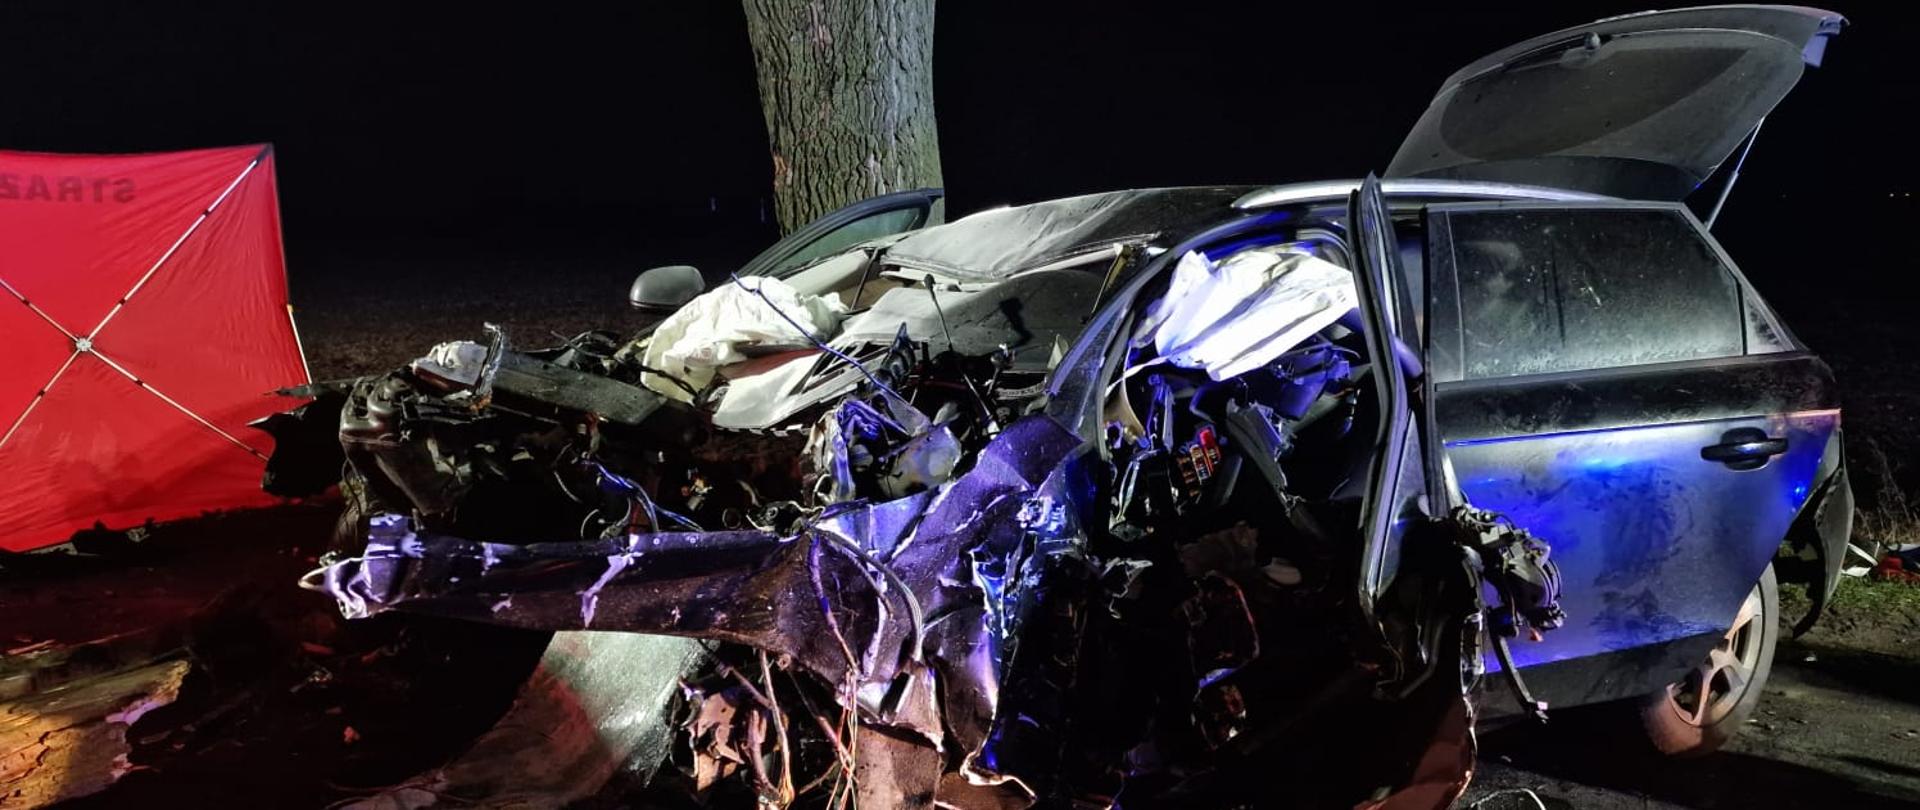 Widać mocno uszkodzony samochód od przodu i lewego boku, za nim jest drzewo, jest ciemno